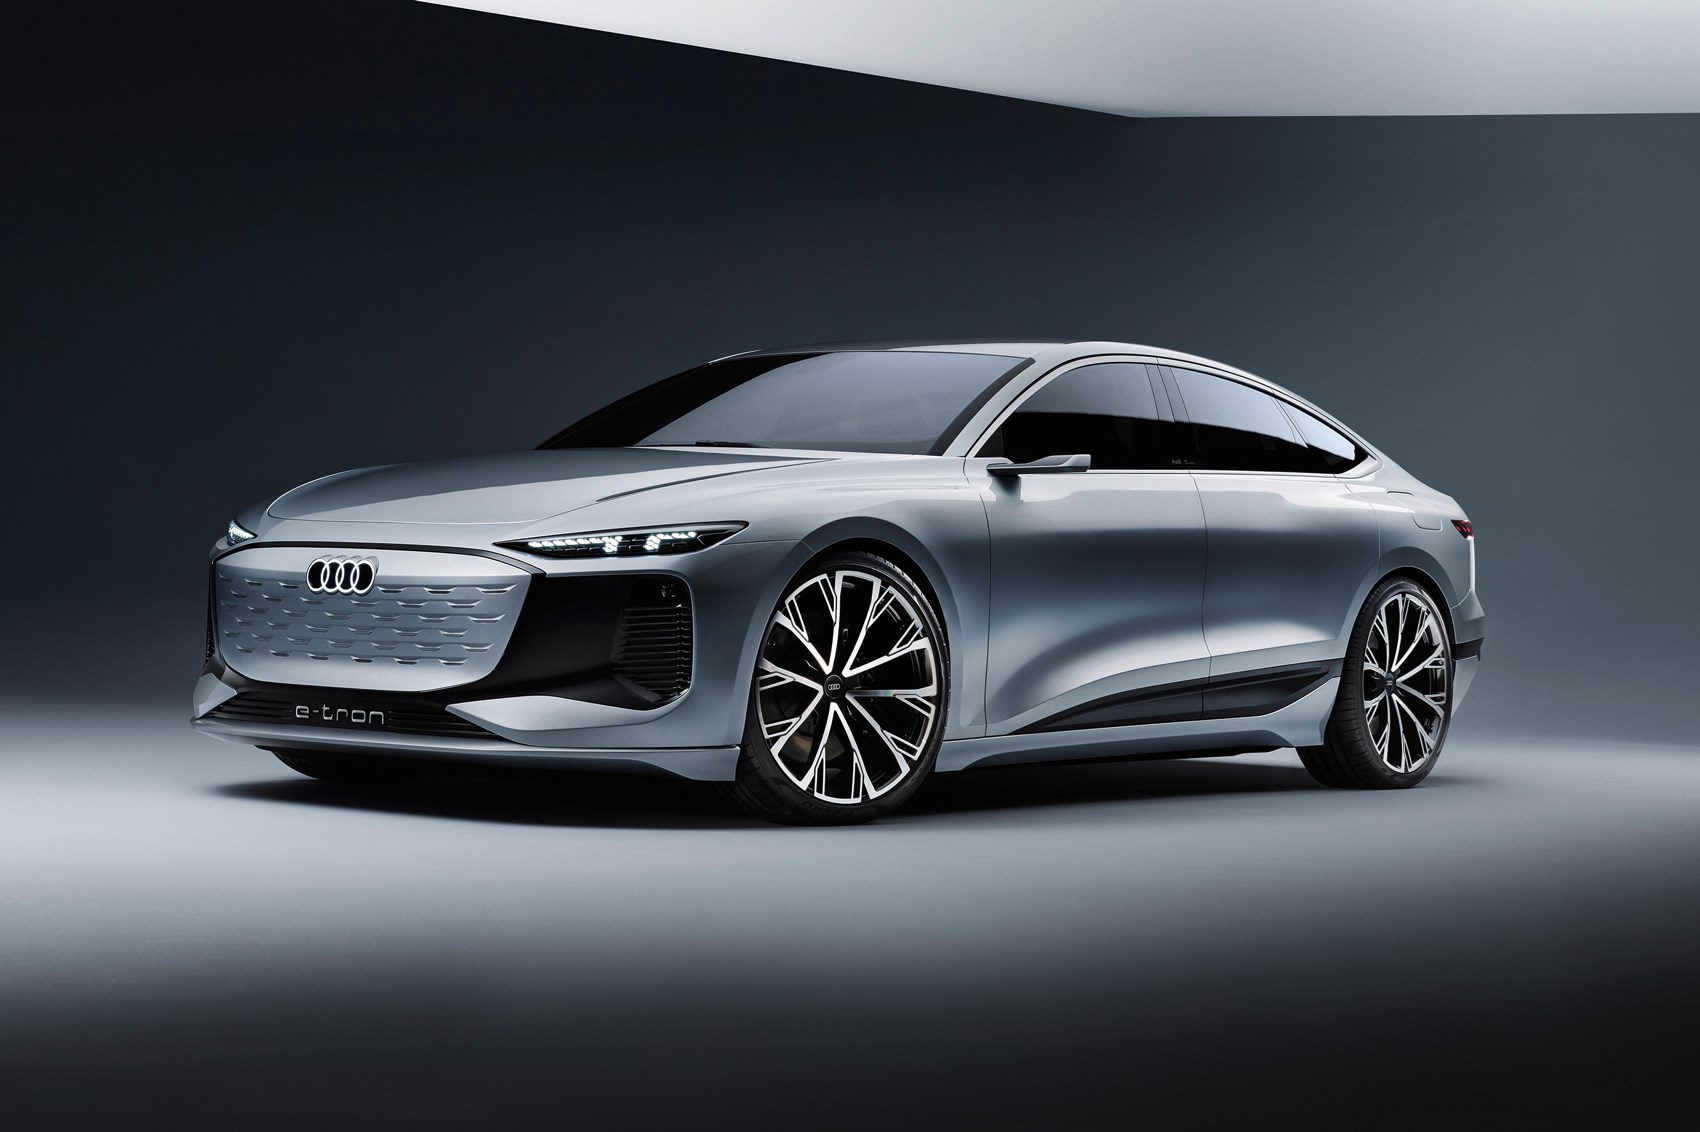 Audi A6 E Tron Concept: Executive EV Previews 2023 Production Car